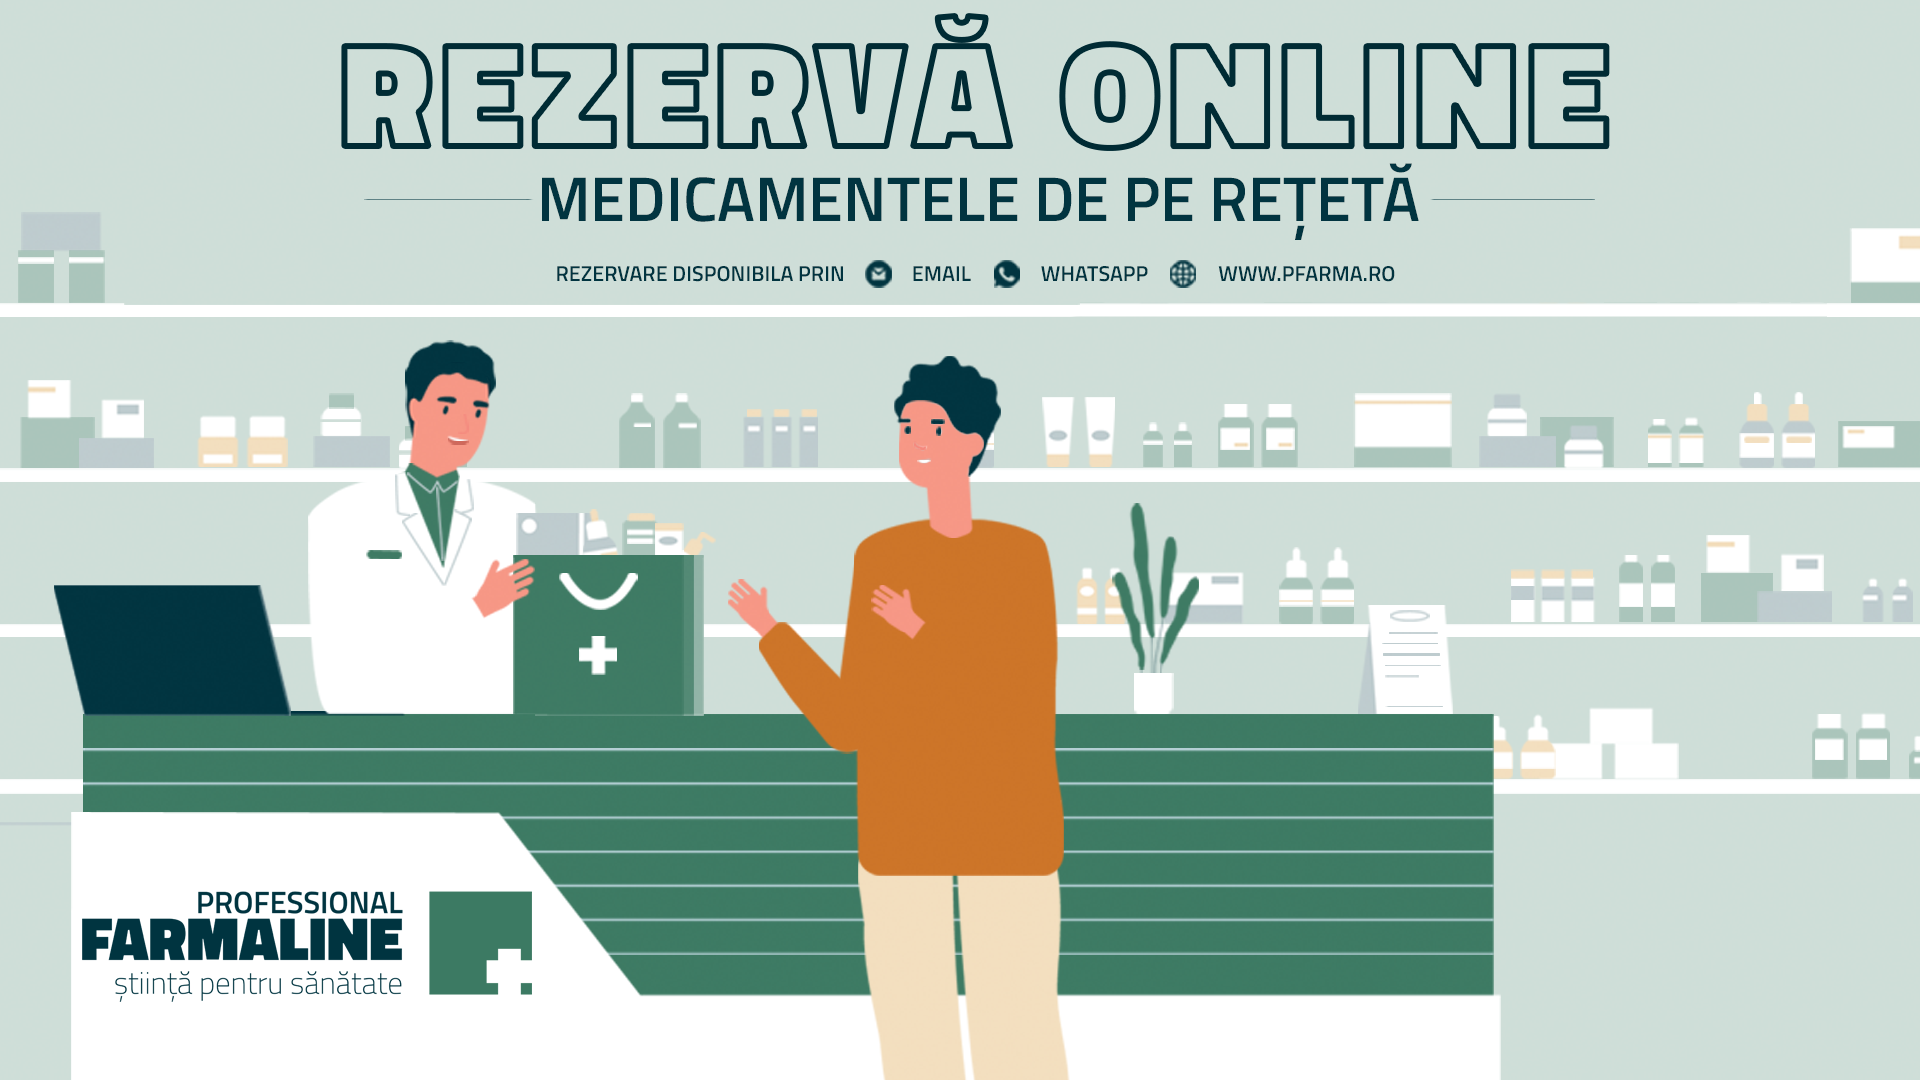 Pfarma.ro - asistentul tău online pentru rezervarea rețetelor de medicamente